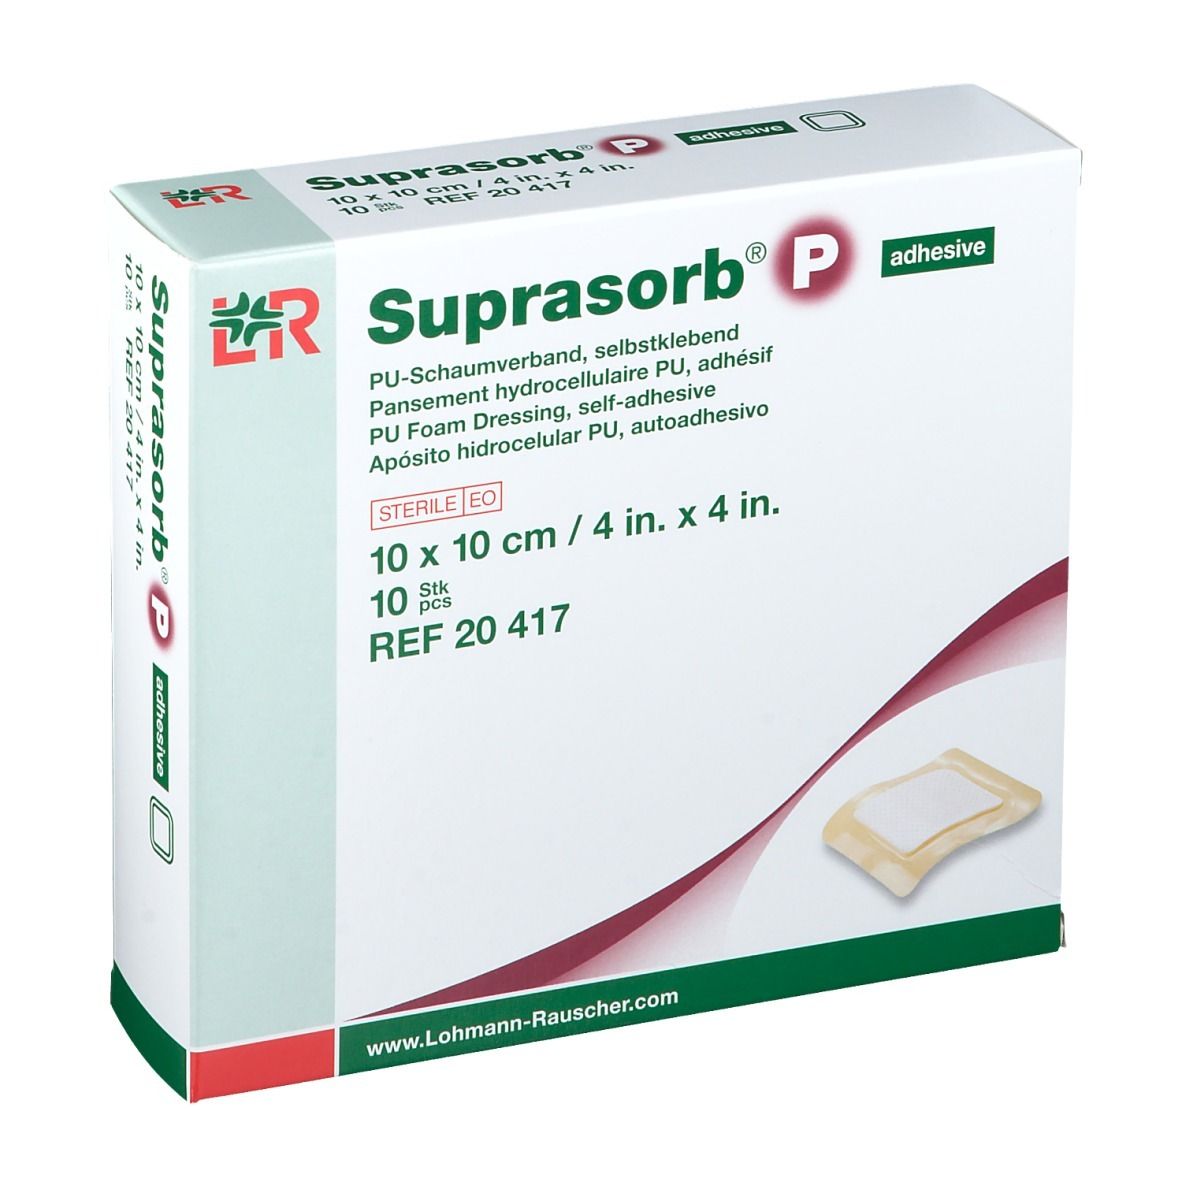 Suprasorb® P Adhesive 10 cm x 10 cm